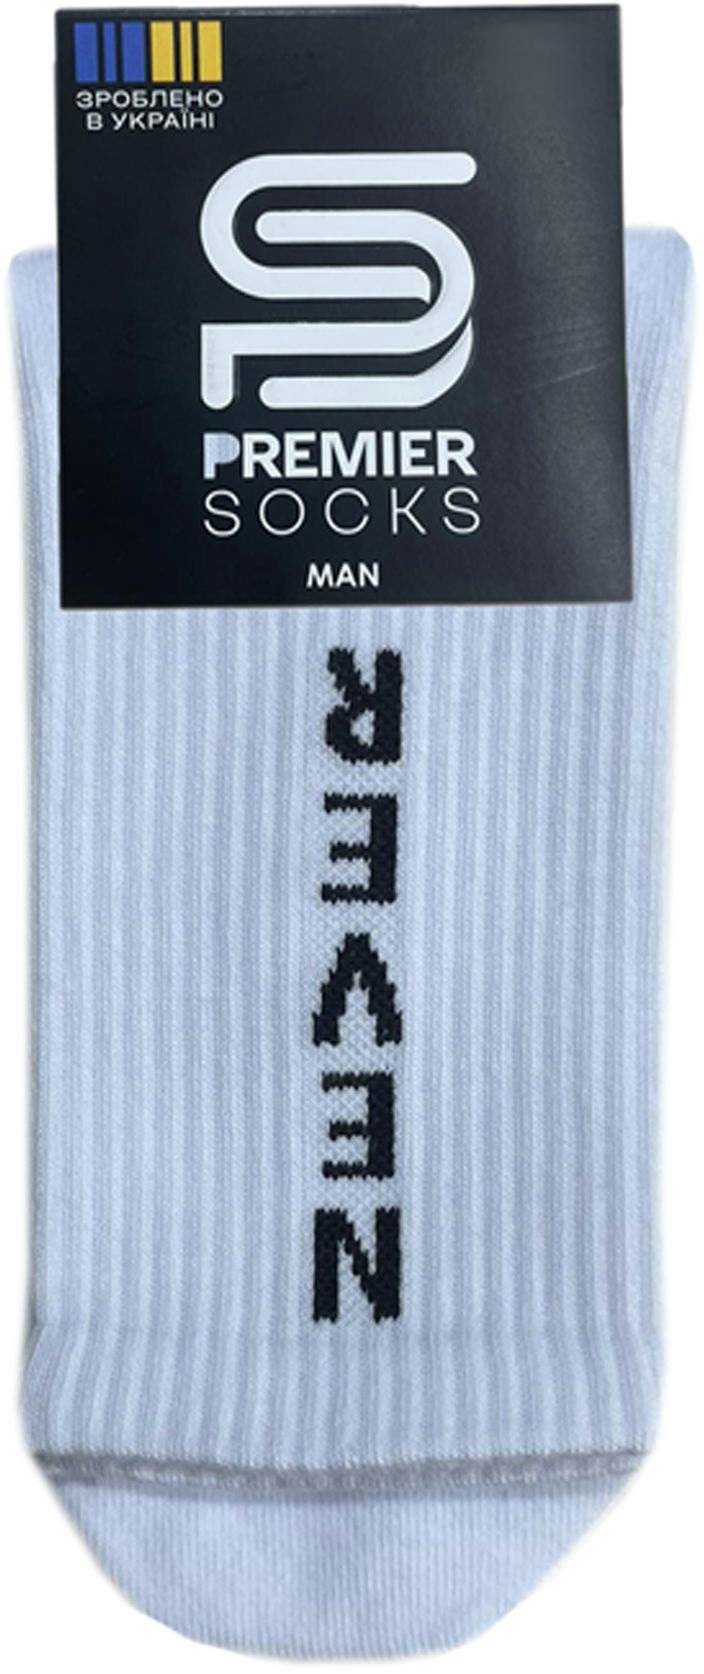 Носки мужские Premier Socks 42-43 1 пара белые с принтом (4820163317922) фото 4